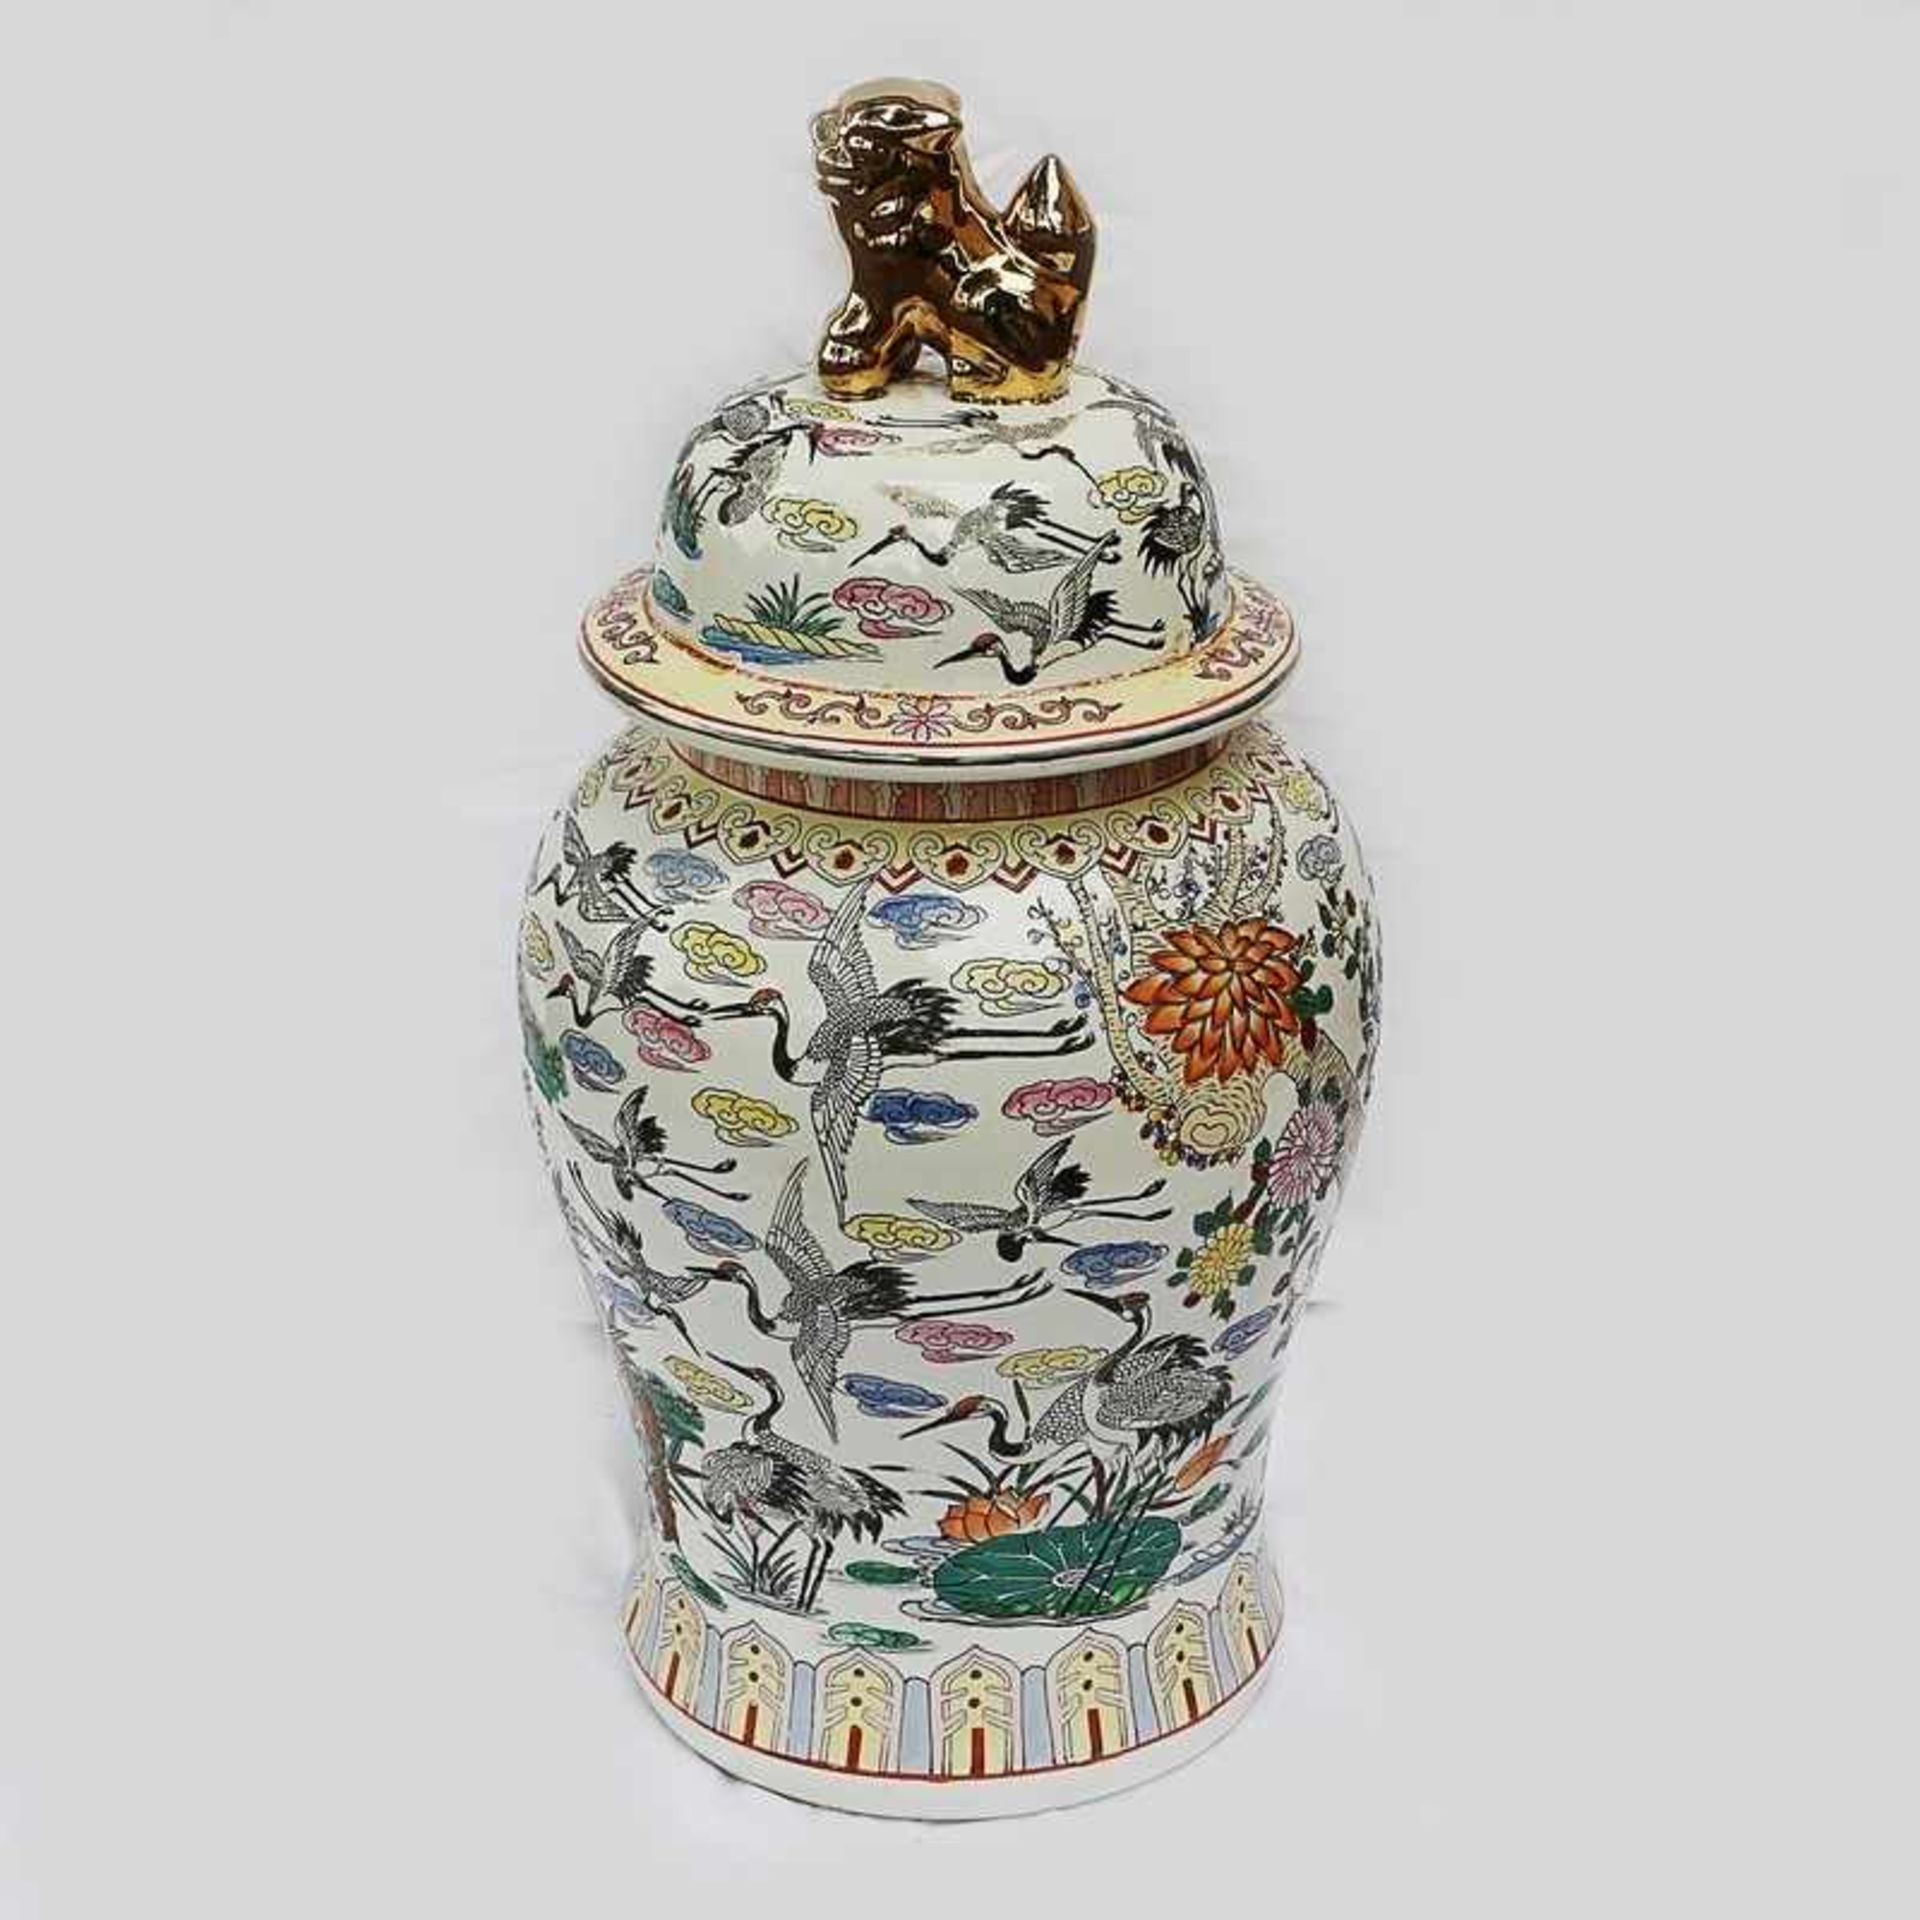 Bodenvase - China 20.Jh. weißes Porzellan, runder Stand, bauchiger Korpus, umlaufend polychrome